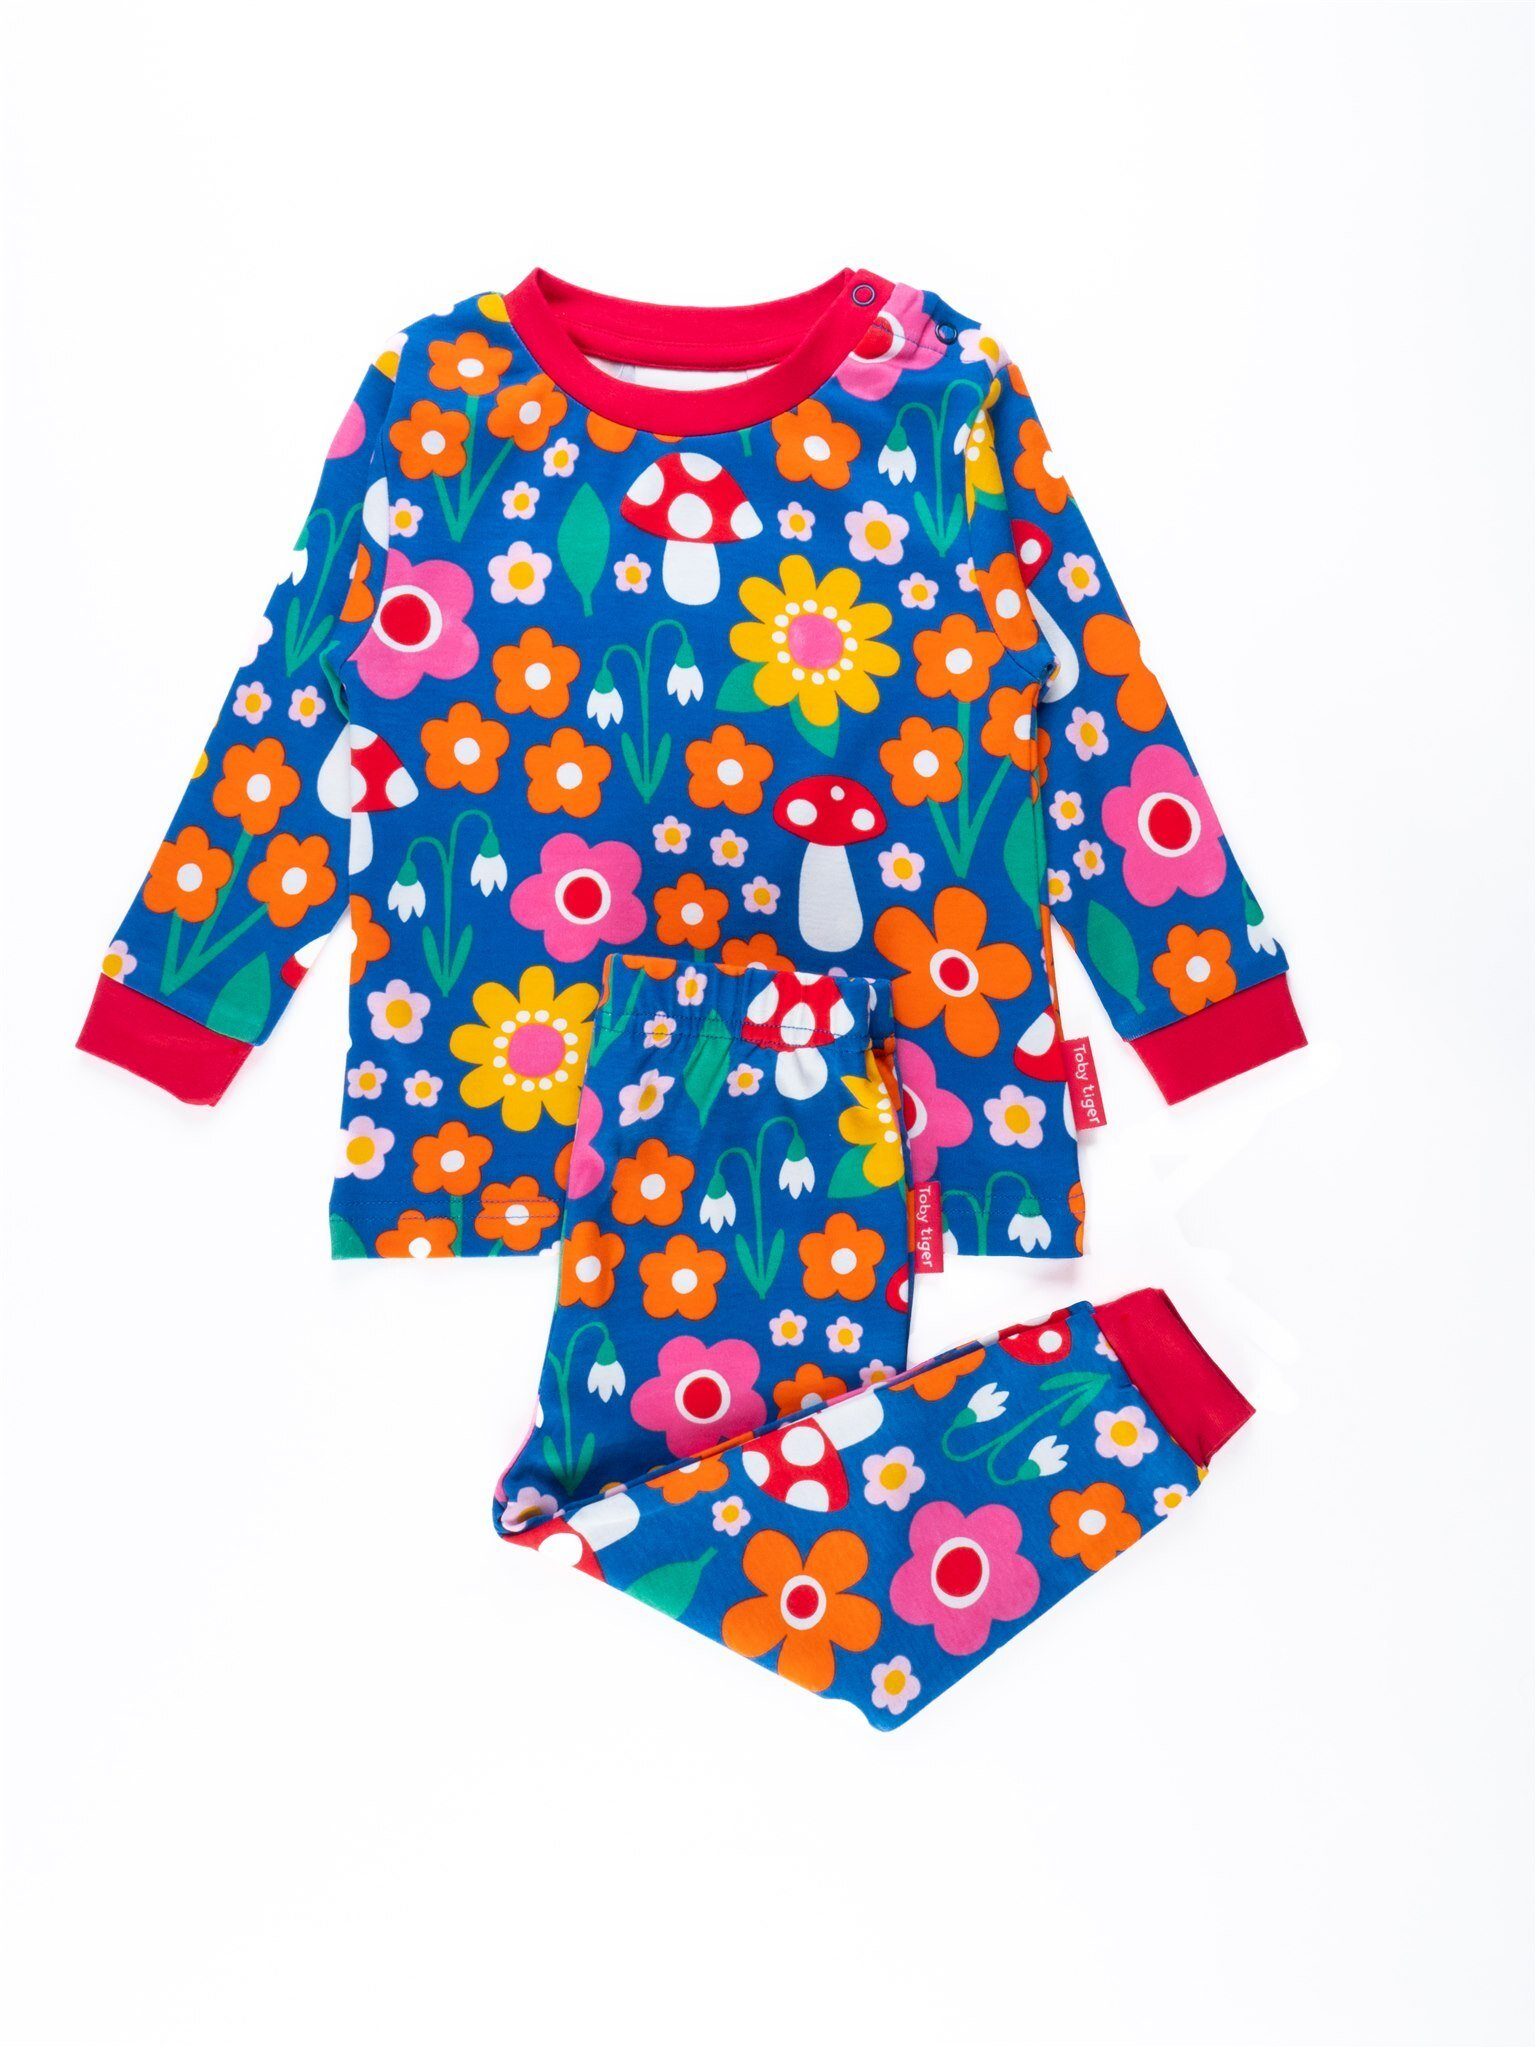 Toby Tiger Blumen und Schlafanzug Applikation Muster Pilz Schlafanzug mit